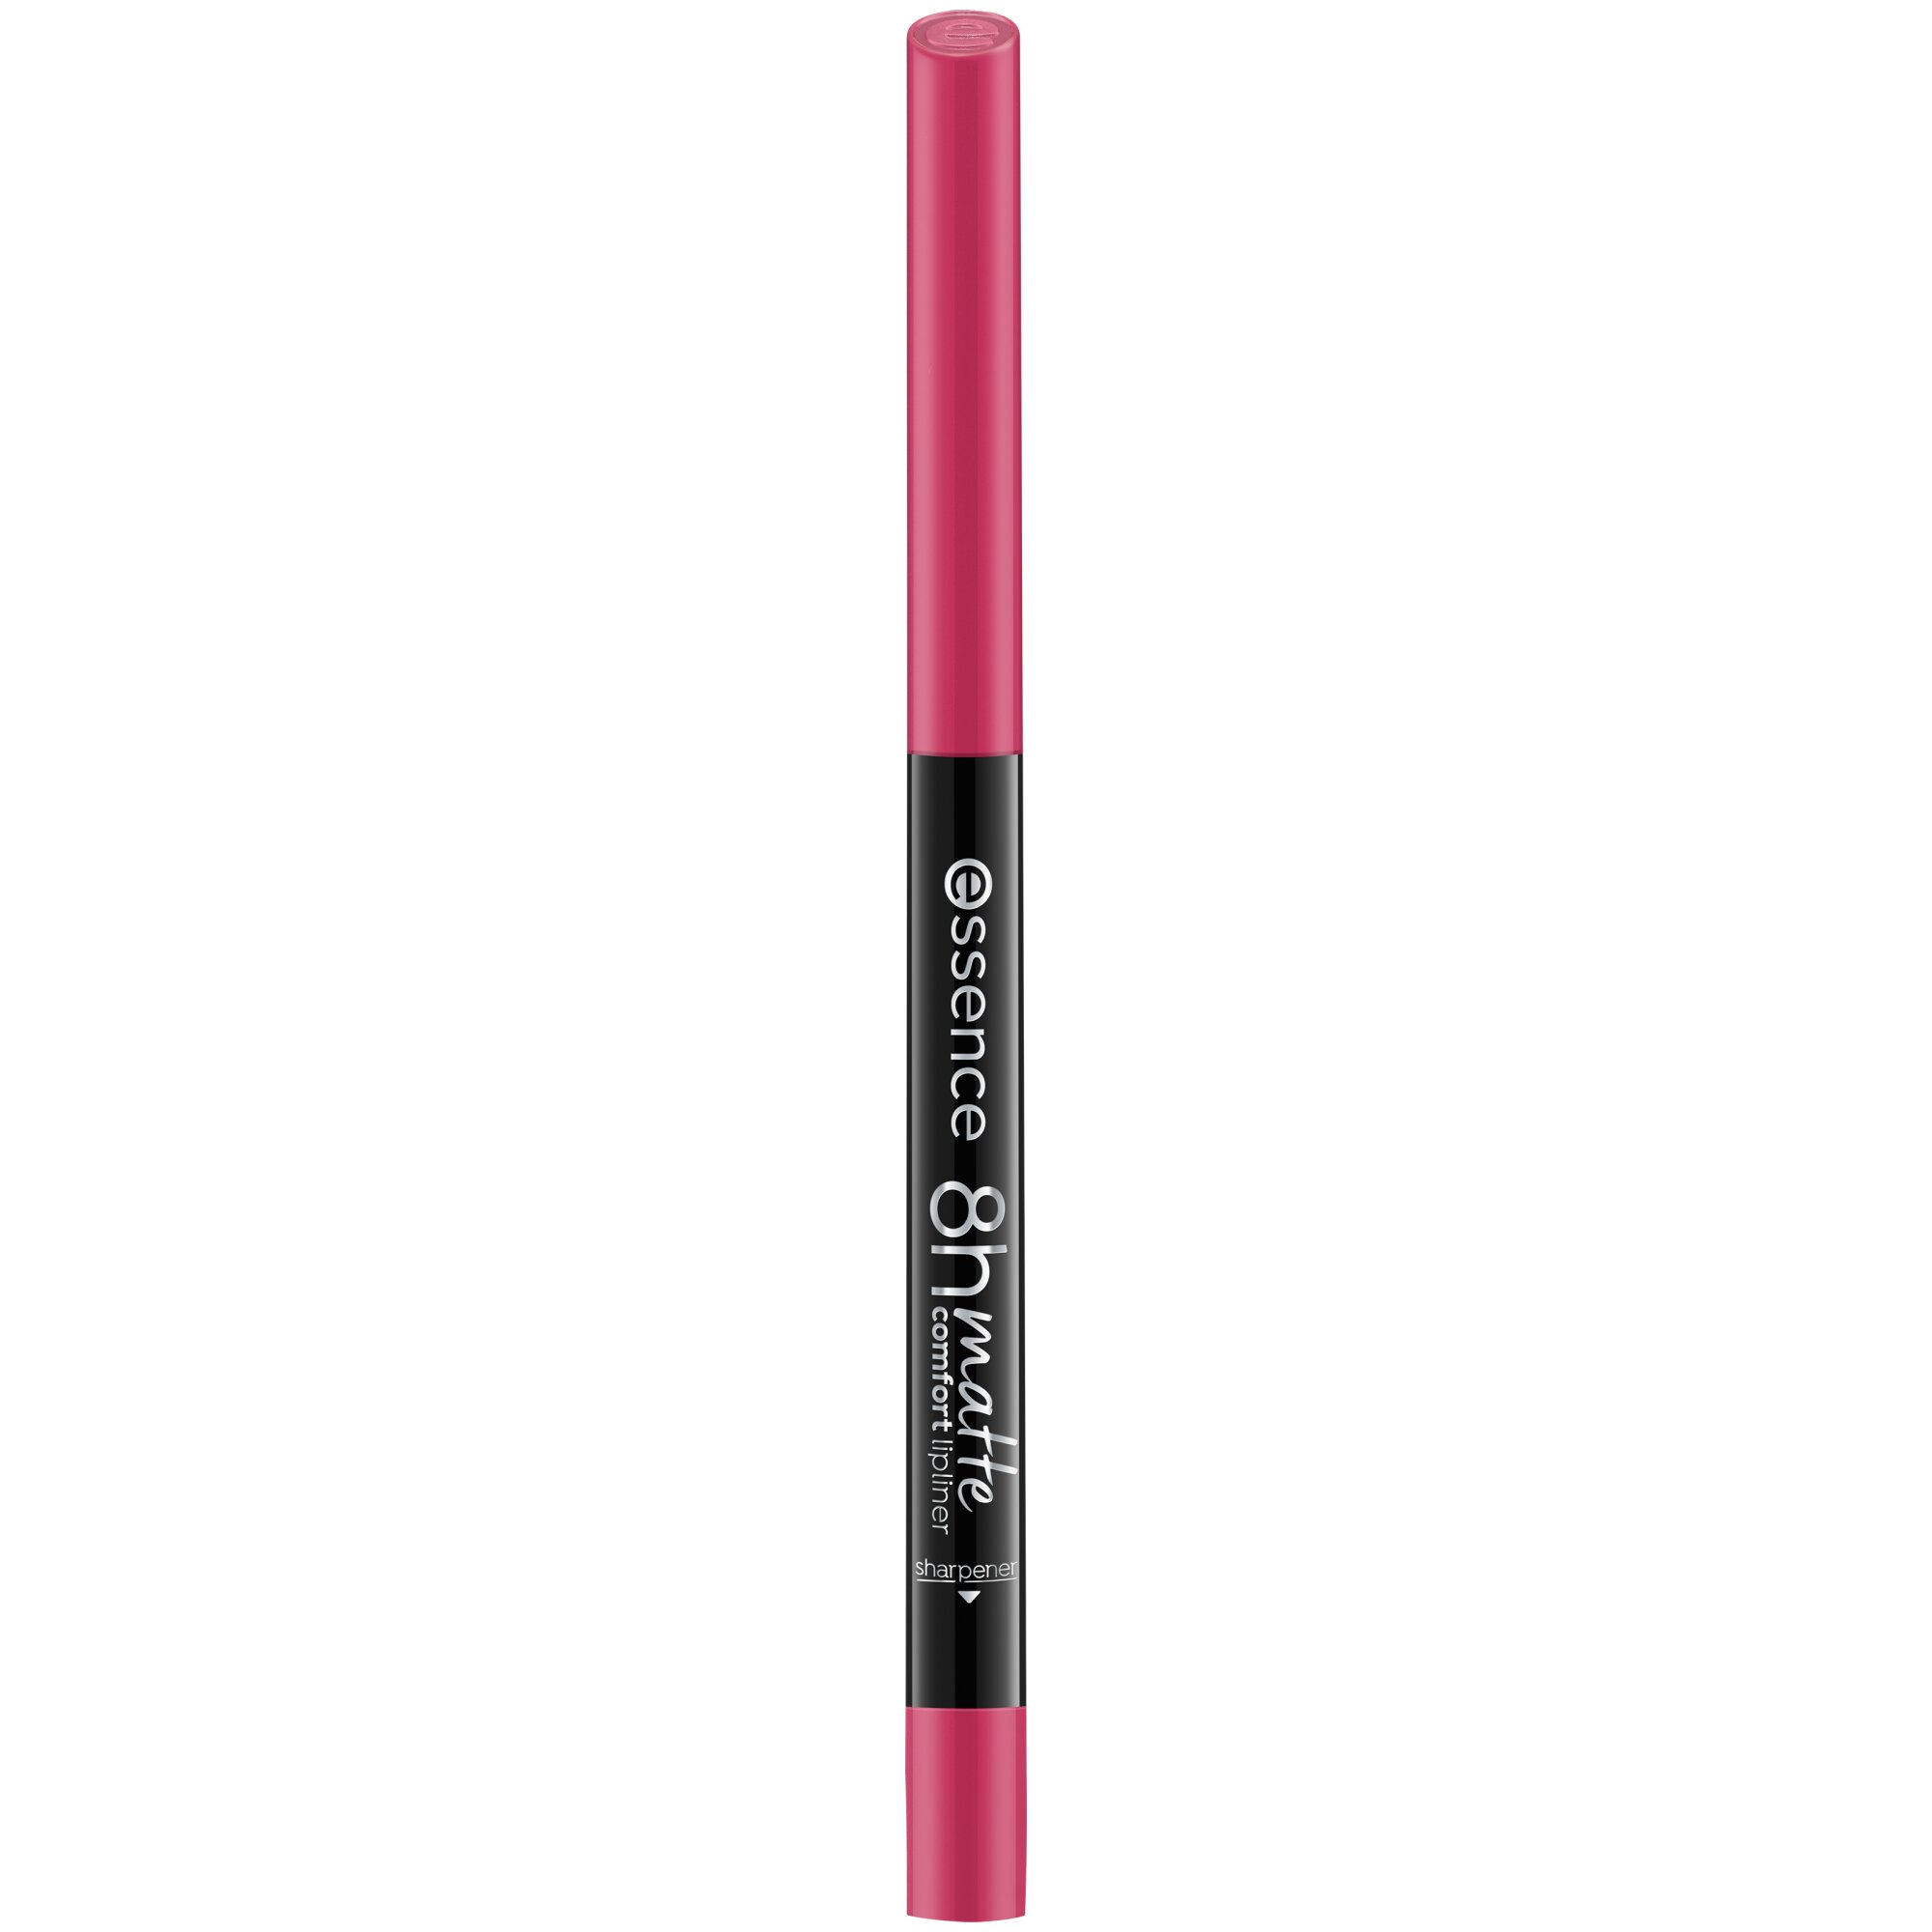 Creion pentru buze mat 8h matte comfort, 05 - Pink Blush, 0.3 g, Essence